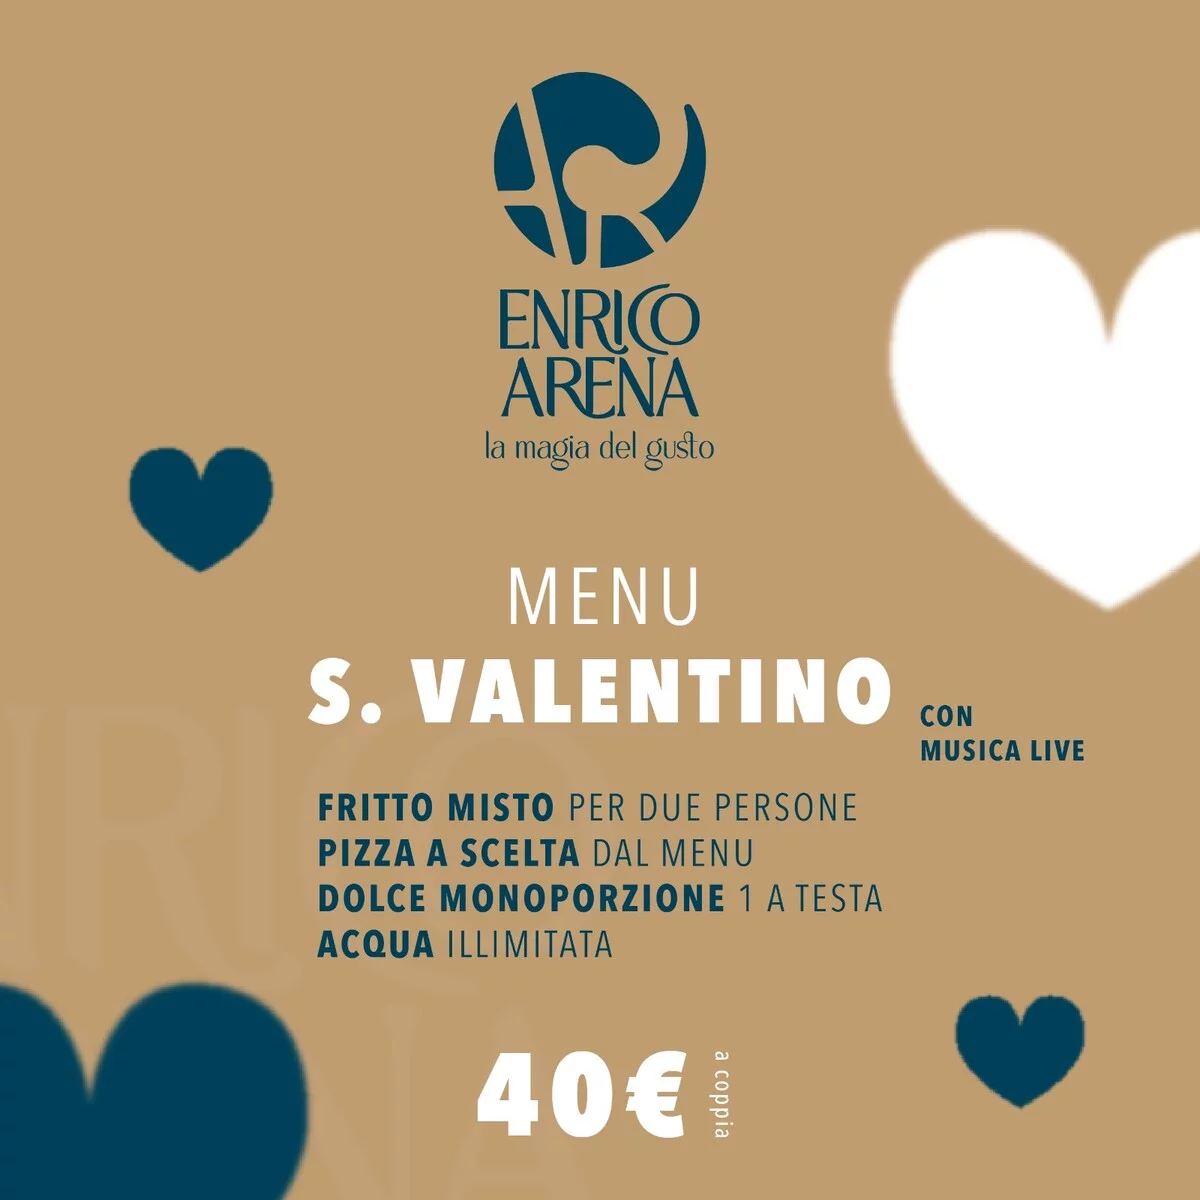 Enrico Arena presenta il suo San Valentino GlAmour